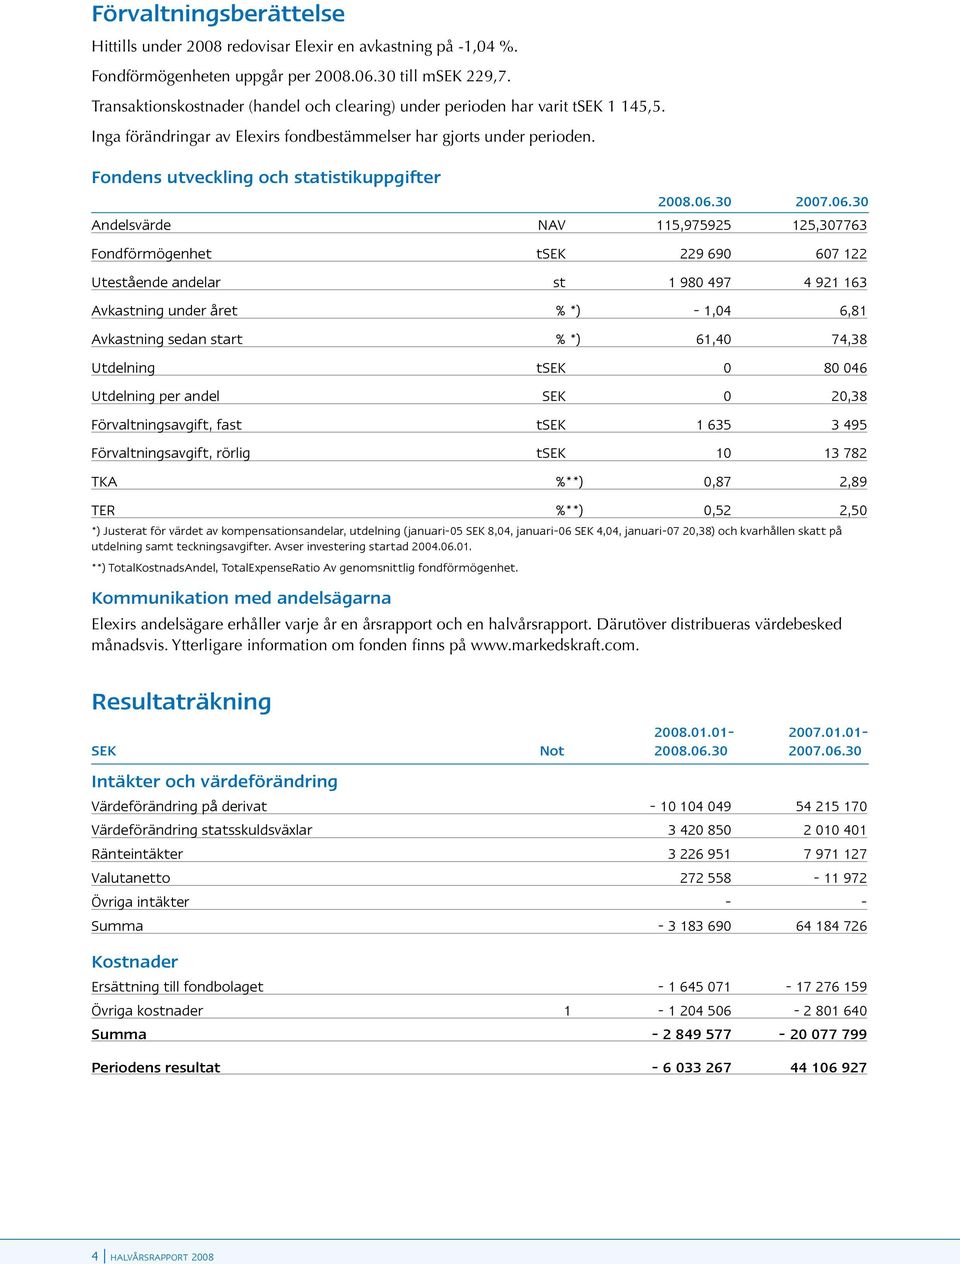 Fondens utveckling och statistikuppgifter 2008.06.